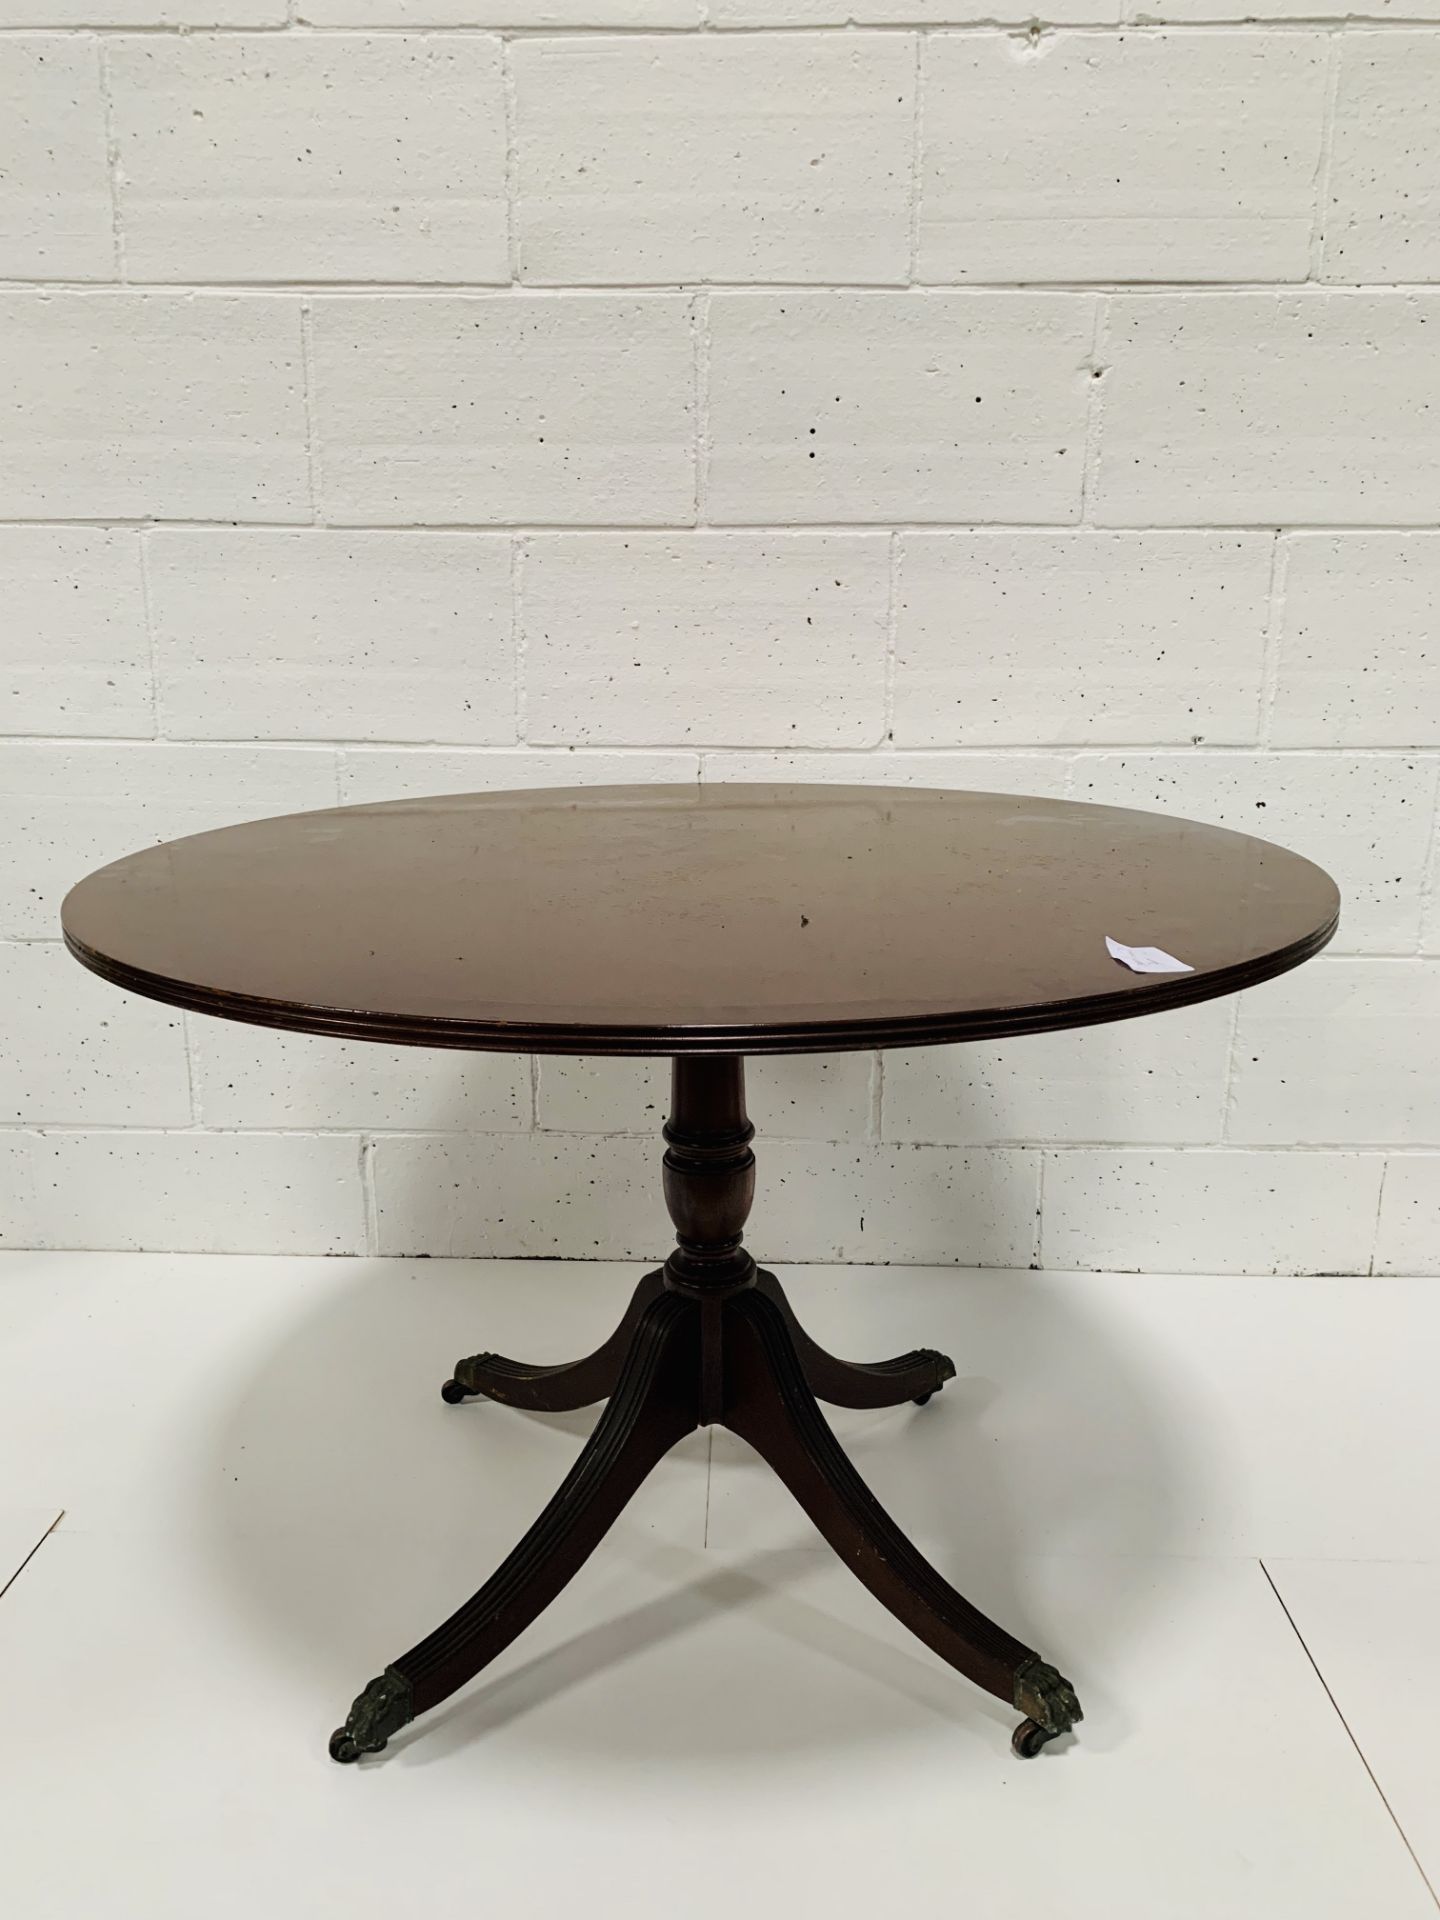 Mahogany circular pedestal table.